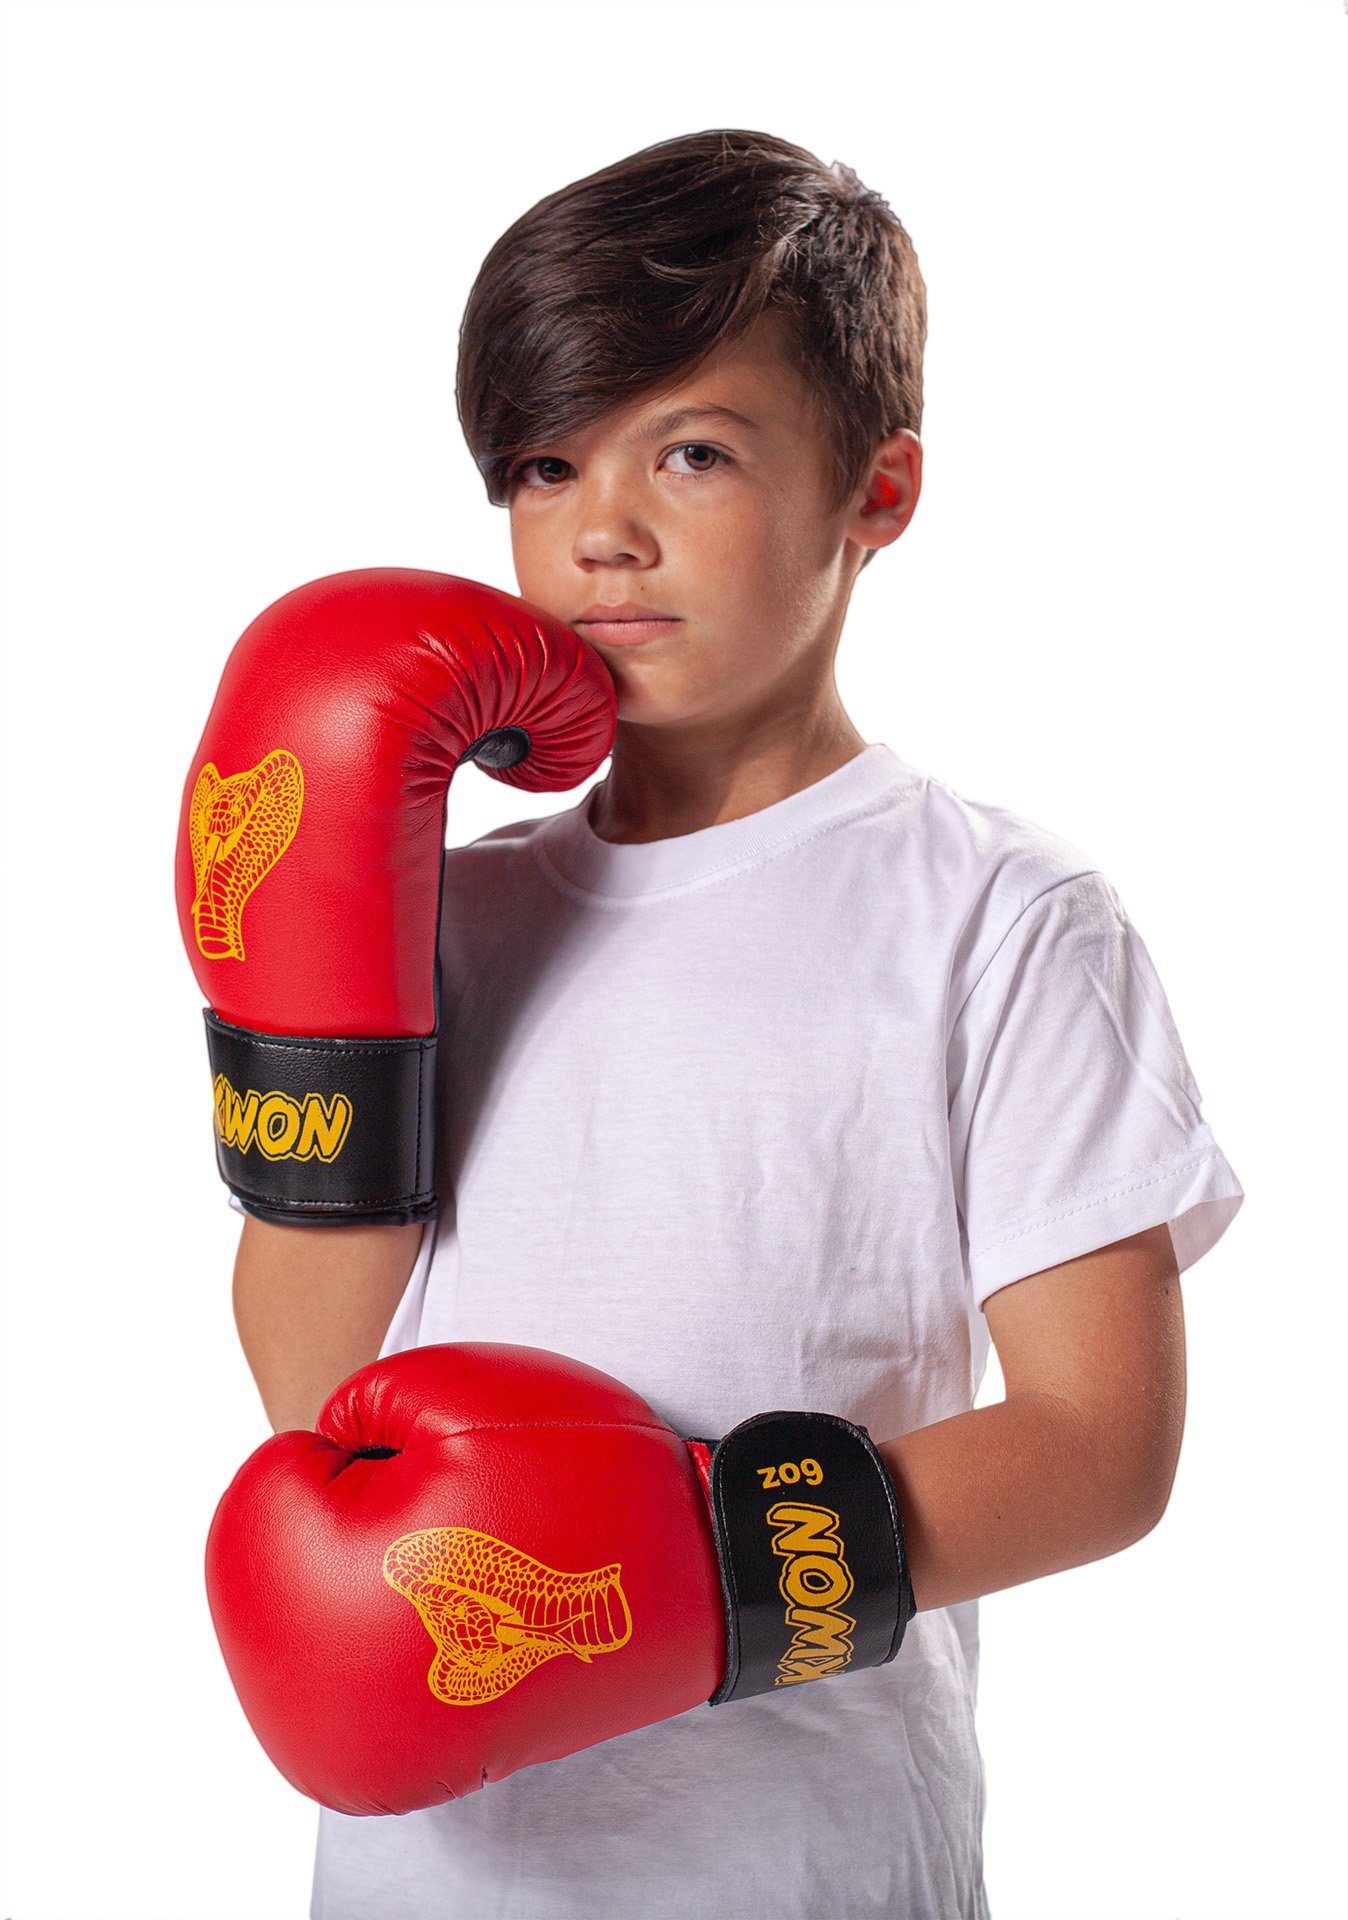 KWON Boxhandschuhe Cobra Kinder 6 Schlagtraining Boxen klein Junior am Unzen, 6 Einsteiger, und Kickboxen Kids Unzen (Paar), Sandsack/Pratze Boxen Box-Handschuhe rot